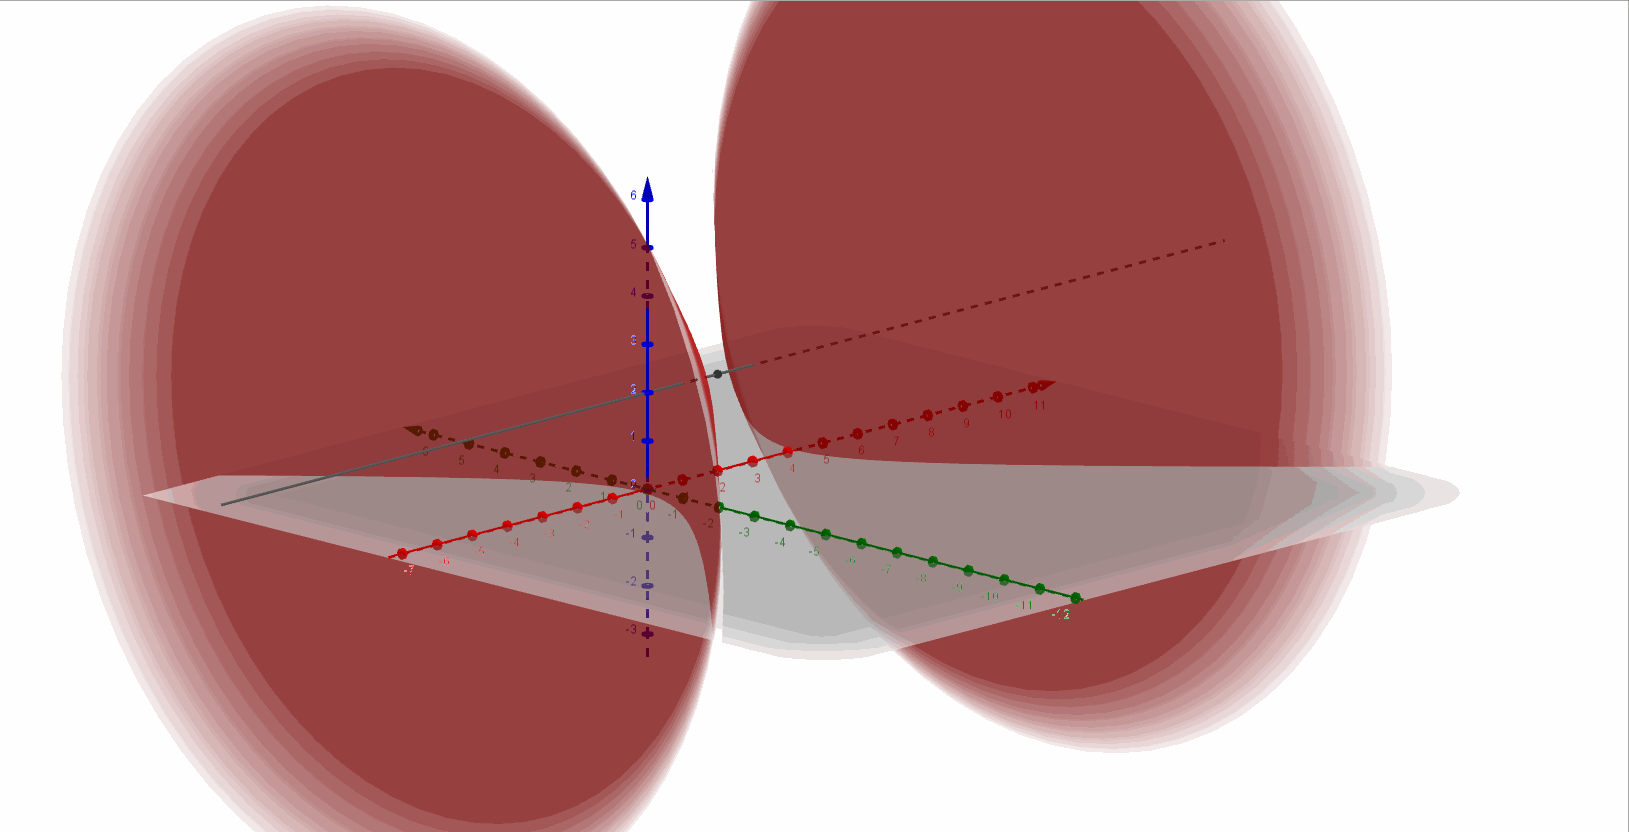 grafica hiperboloide de dos hojas - eje 32